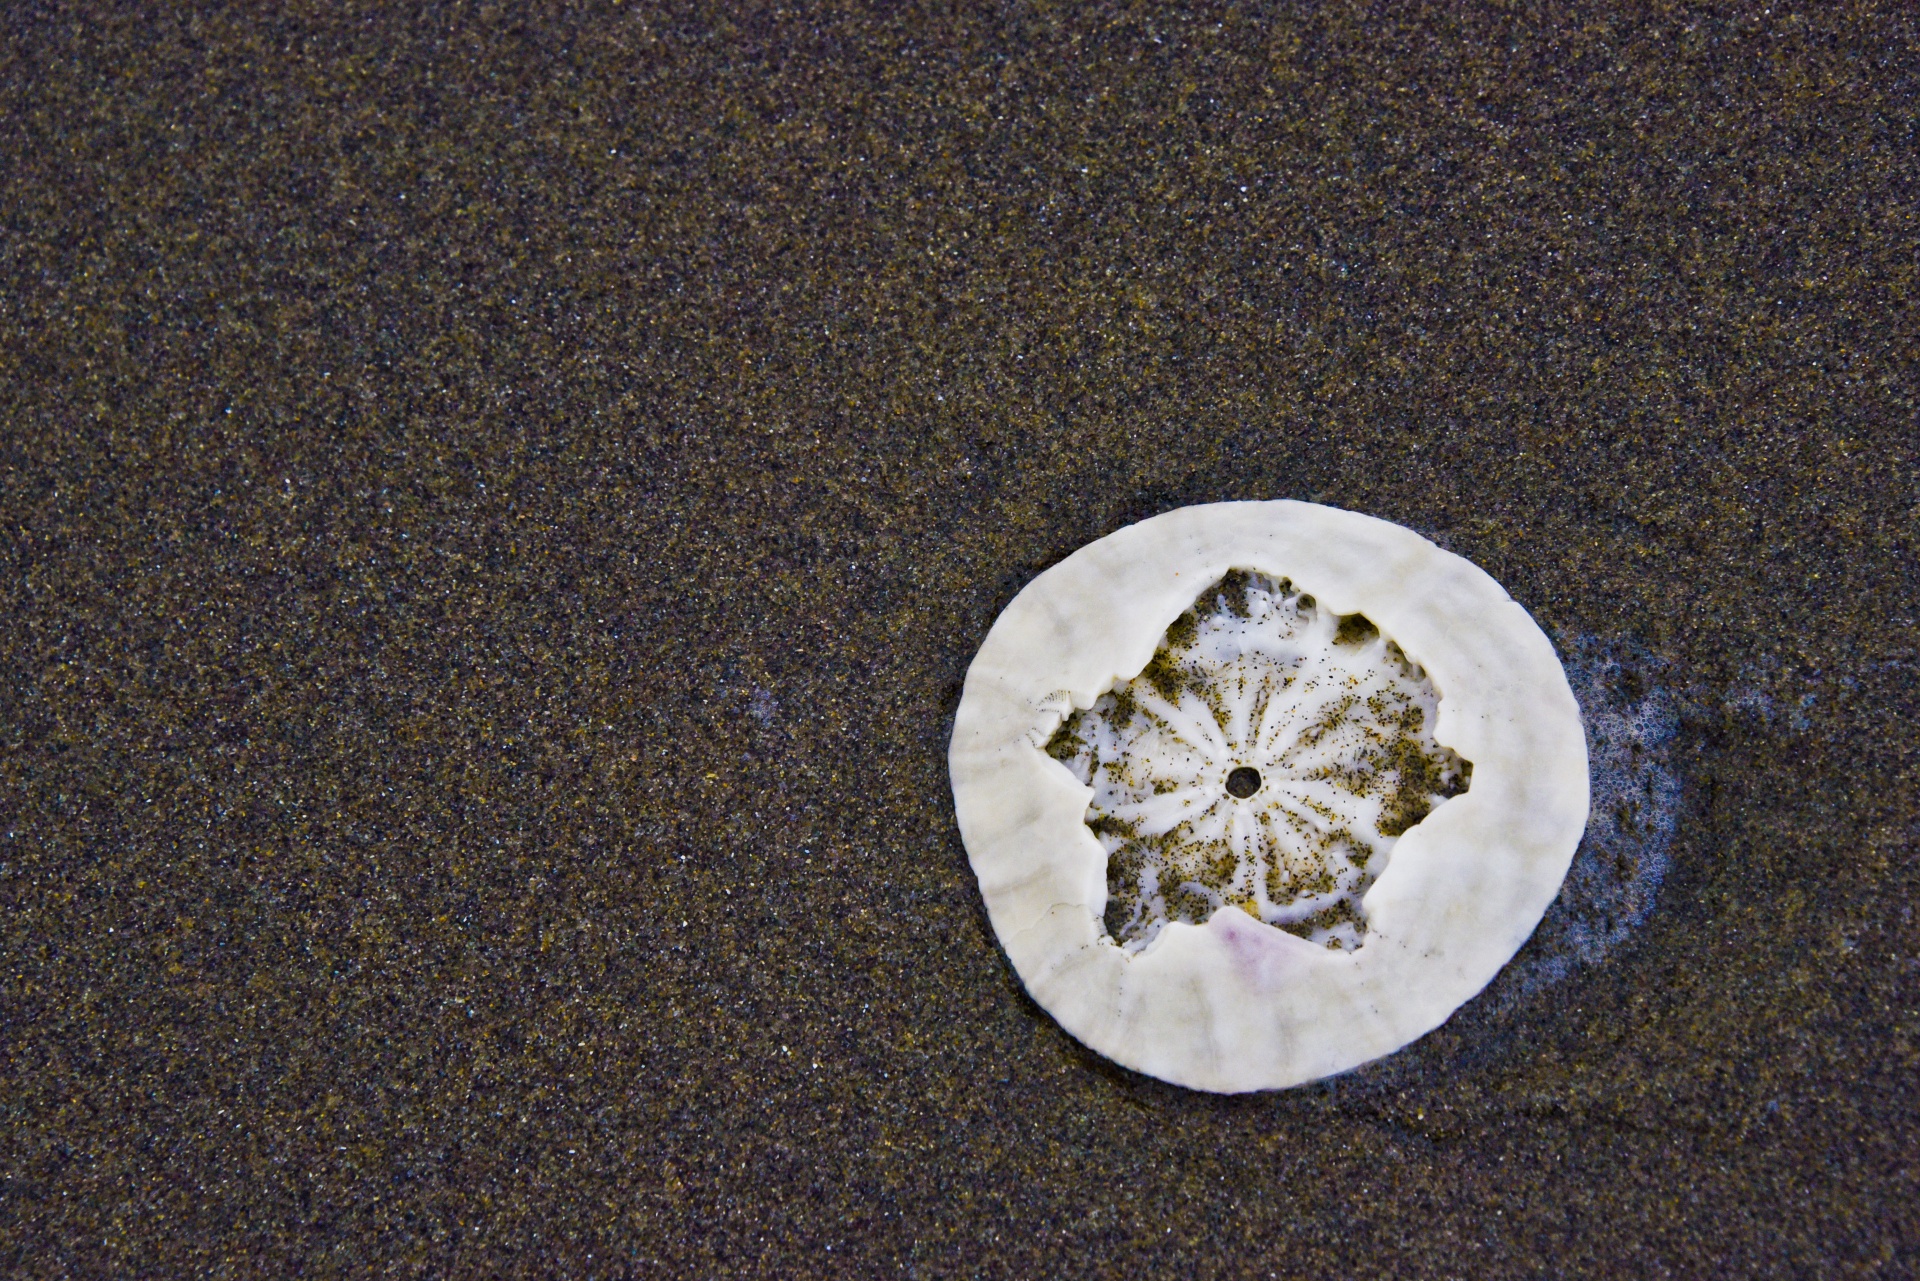 Sand dollar,broken inside,star,surf,tide - free image from needpix.com